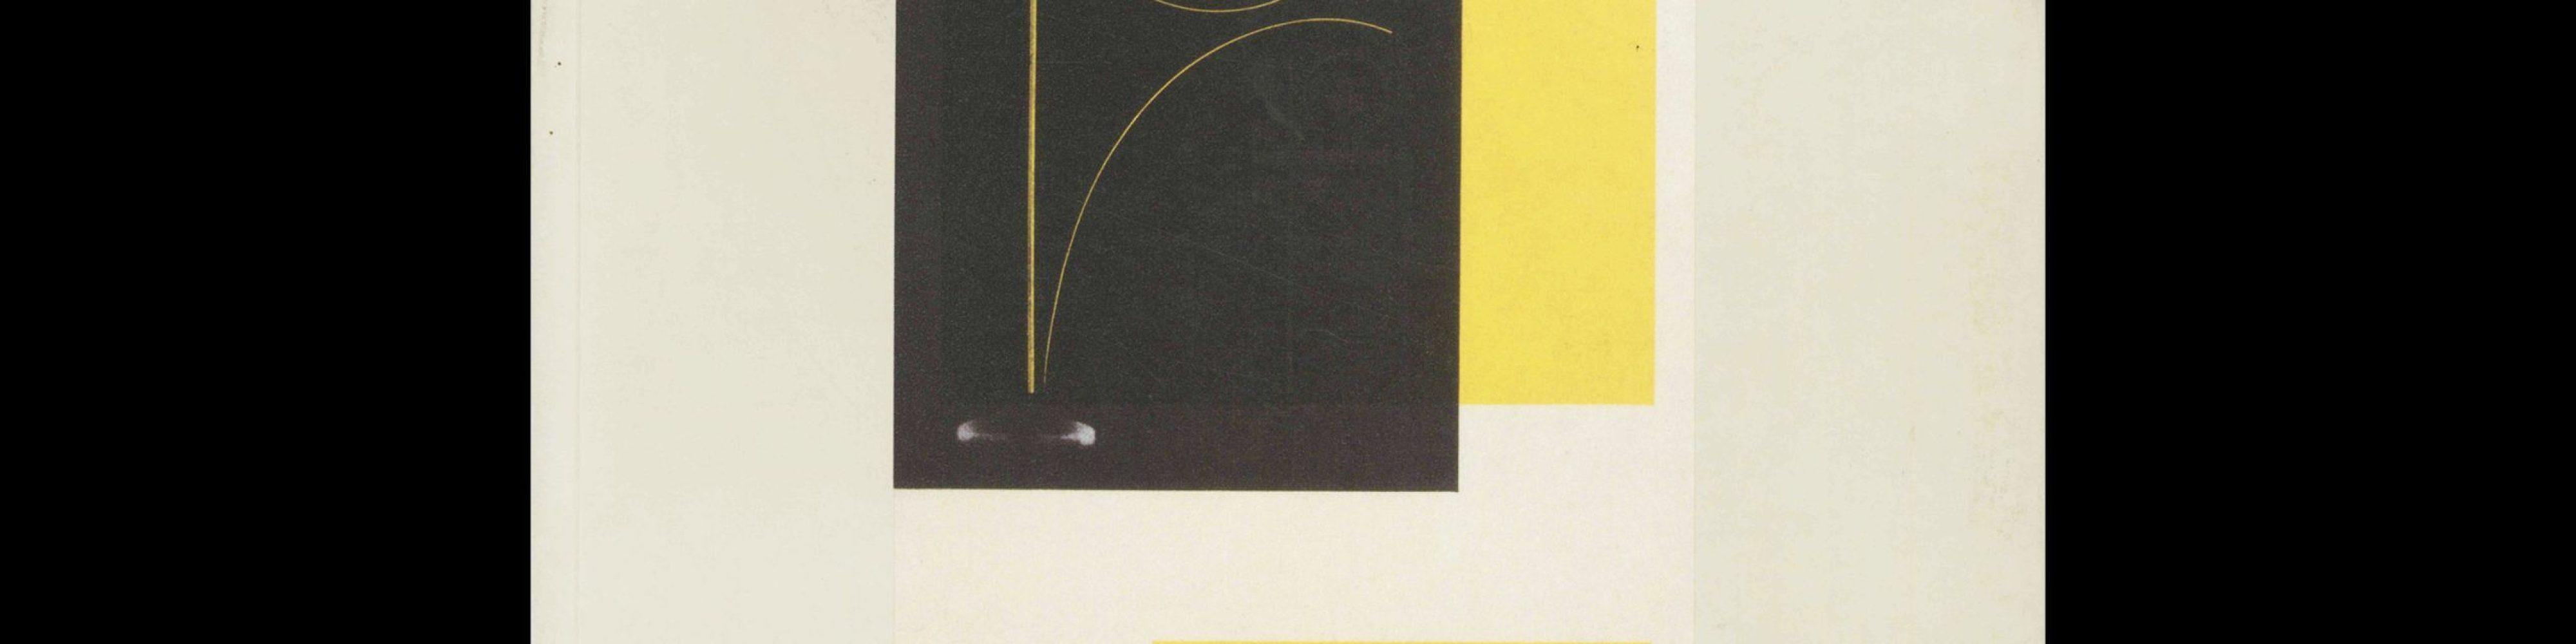 Ring neue werbegestalter, Amsterdamer Ausstellung 1931, 1990